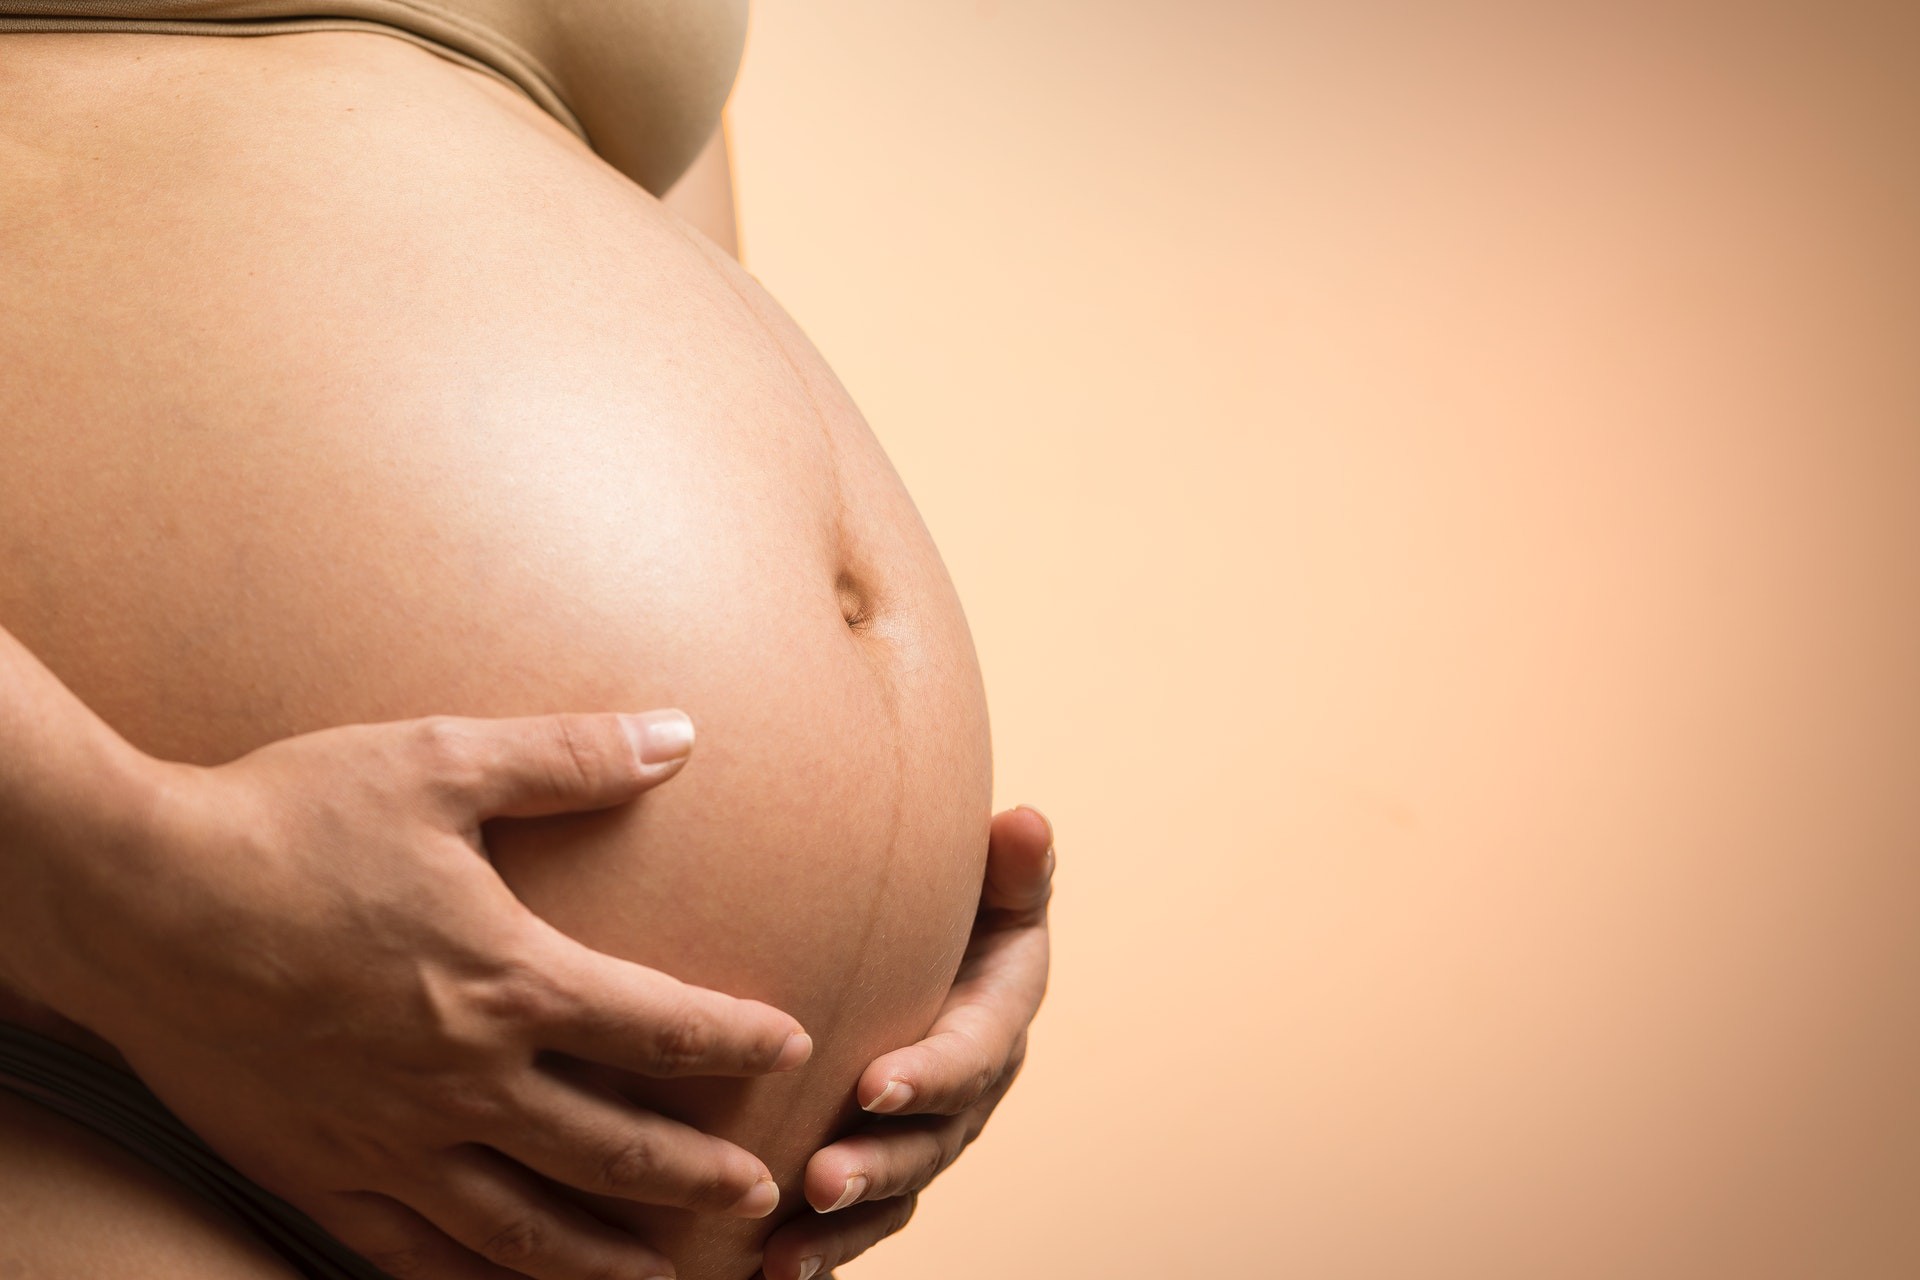 Em estudo, 62% das brasileiras já tiveram pelo menos uma gravidez não planejada (Foto: Daniel Reche/Pexels)